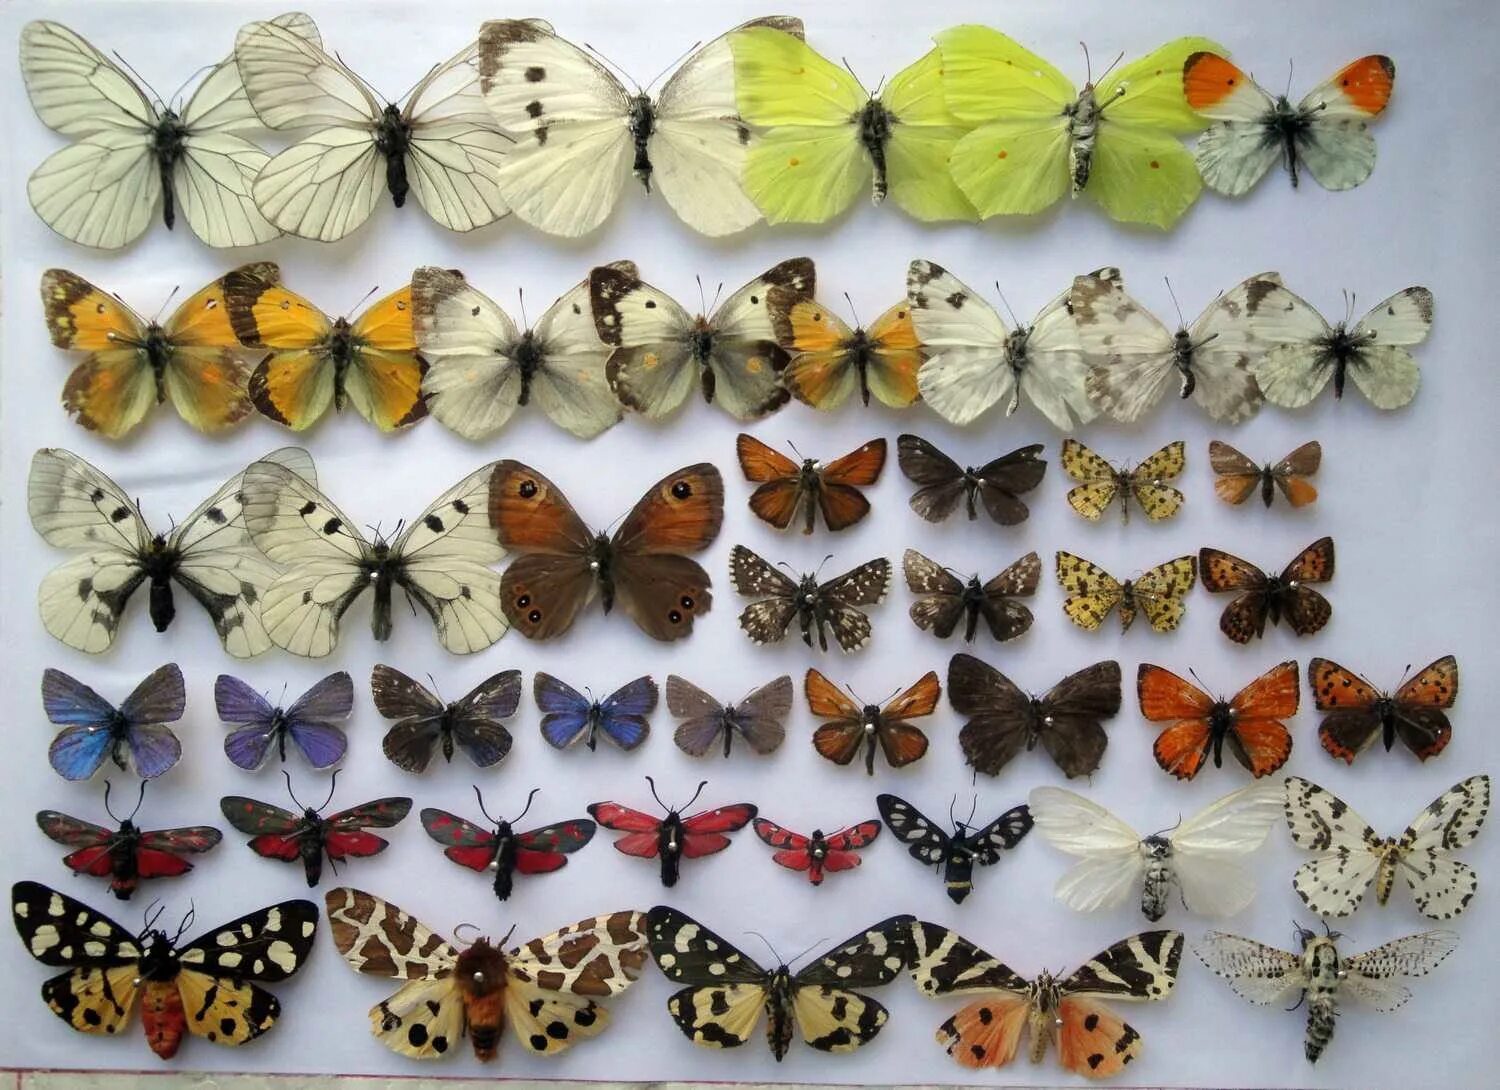 Коллекция энтомологическая "семейство бабочек". Ипатьевский монастырь коллекция бабочек Кострома. Коллекция бабочек в Ипатьевском монастыре. Энтомологическая коллекция бабочек. Где взять бабочек